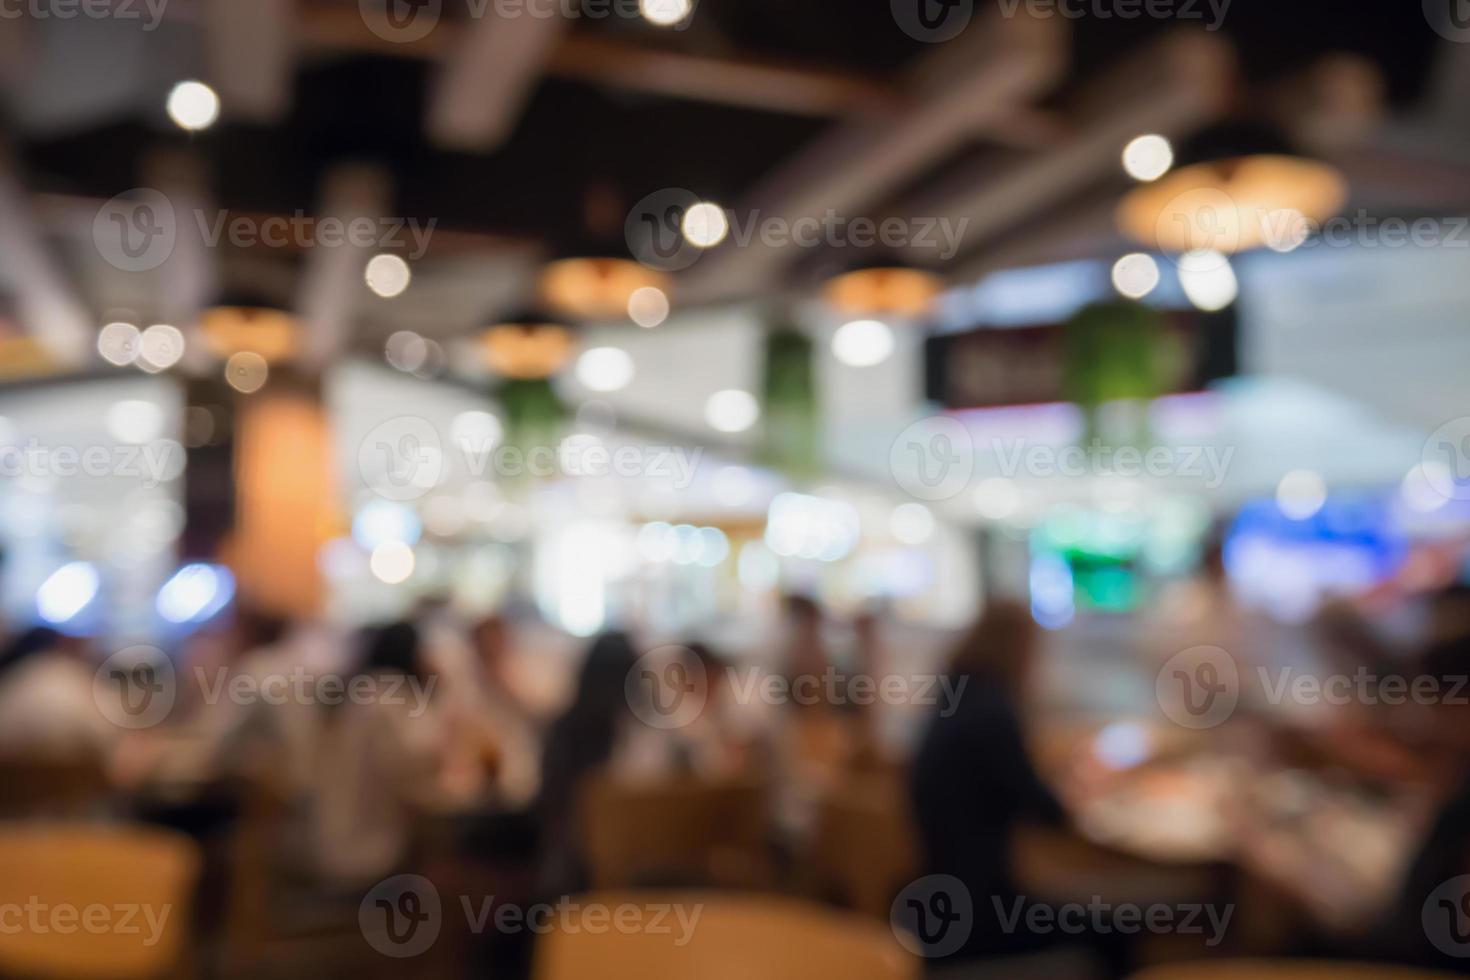 människor i restaurang café interiör med bokeh ljus suddig kund abstrakt bakgrund foto